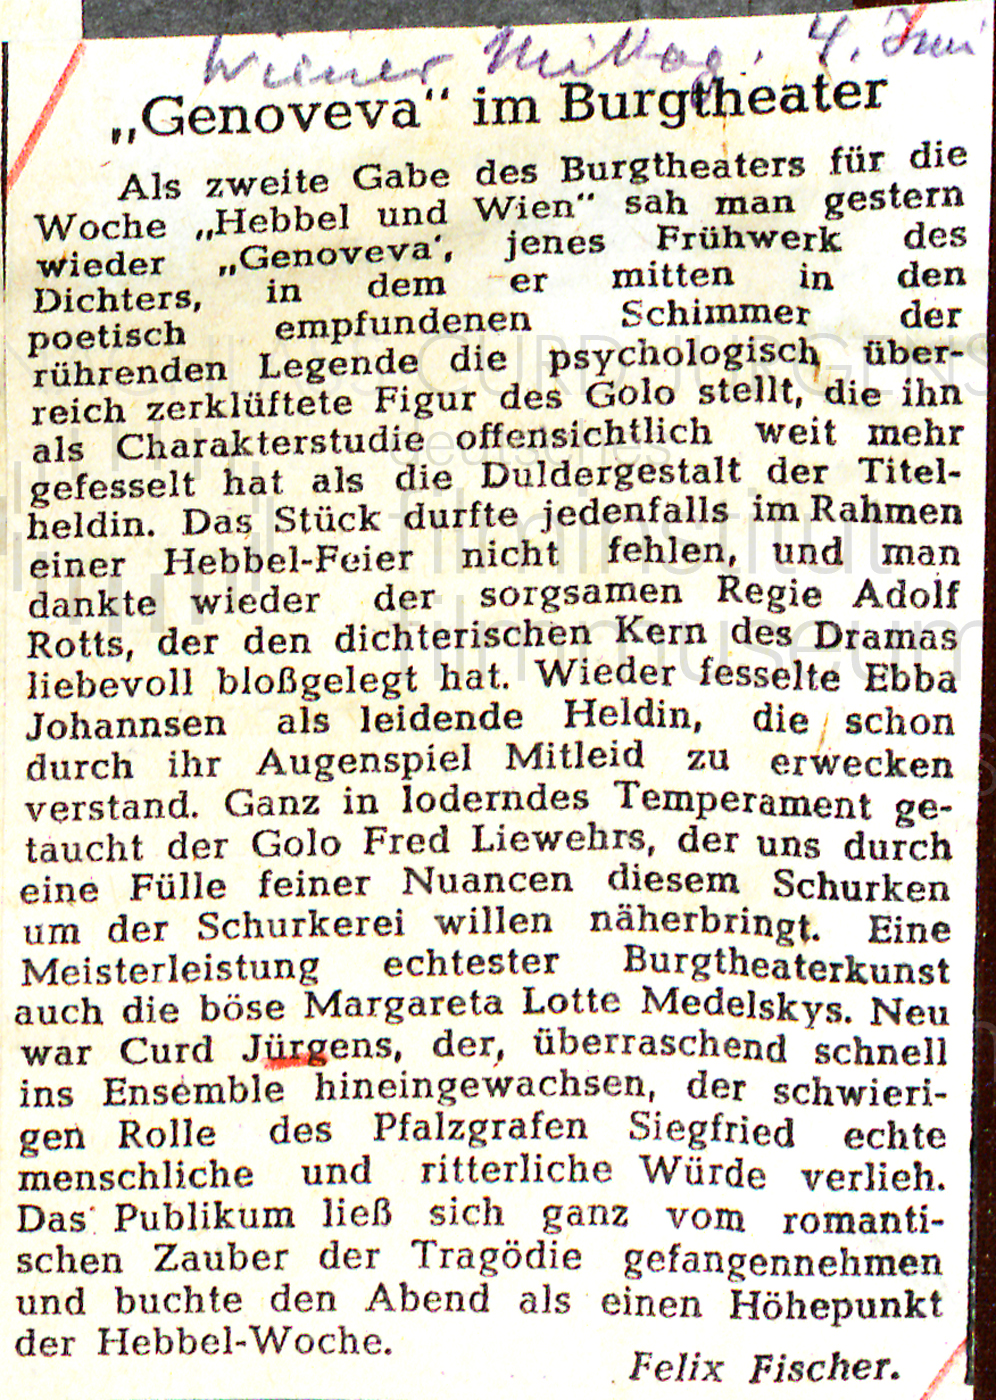 Wiener Mittag: "Genoveva im Burgtheater", 4.6.1941